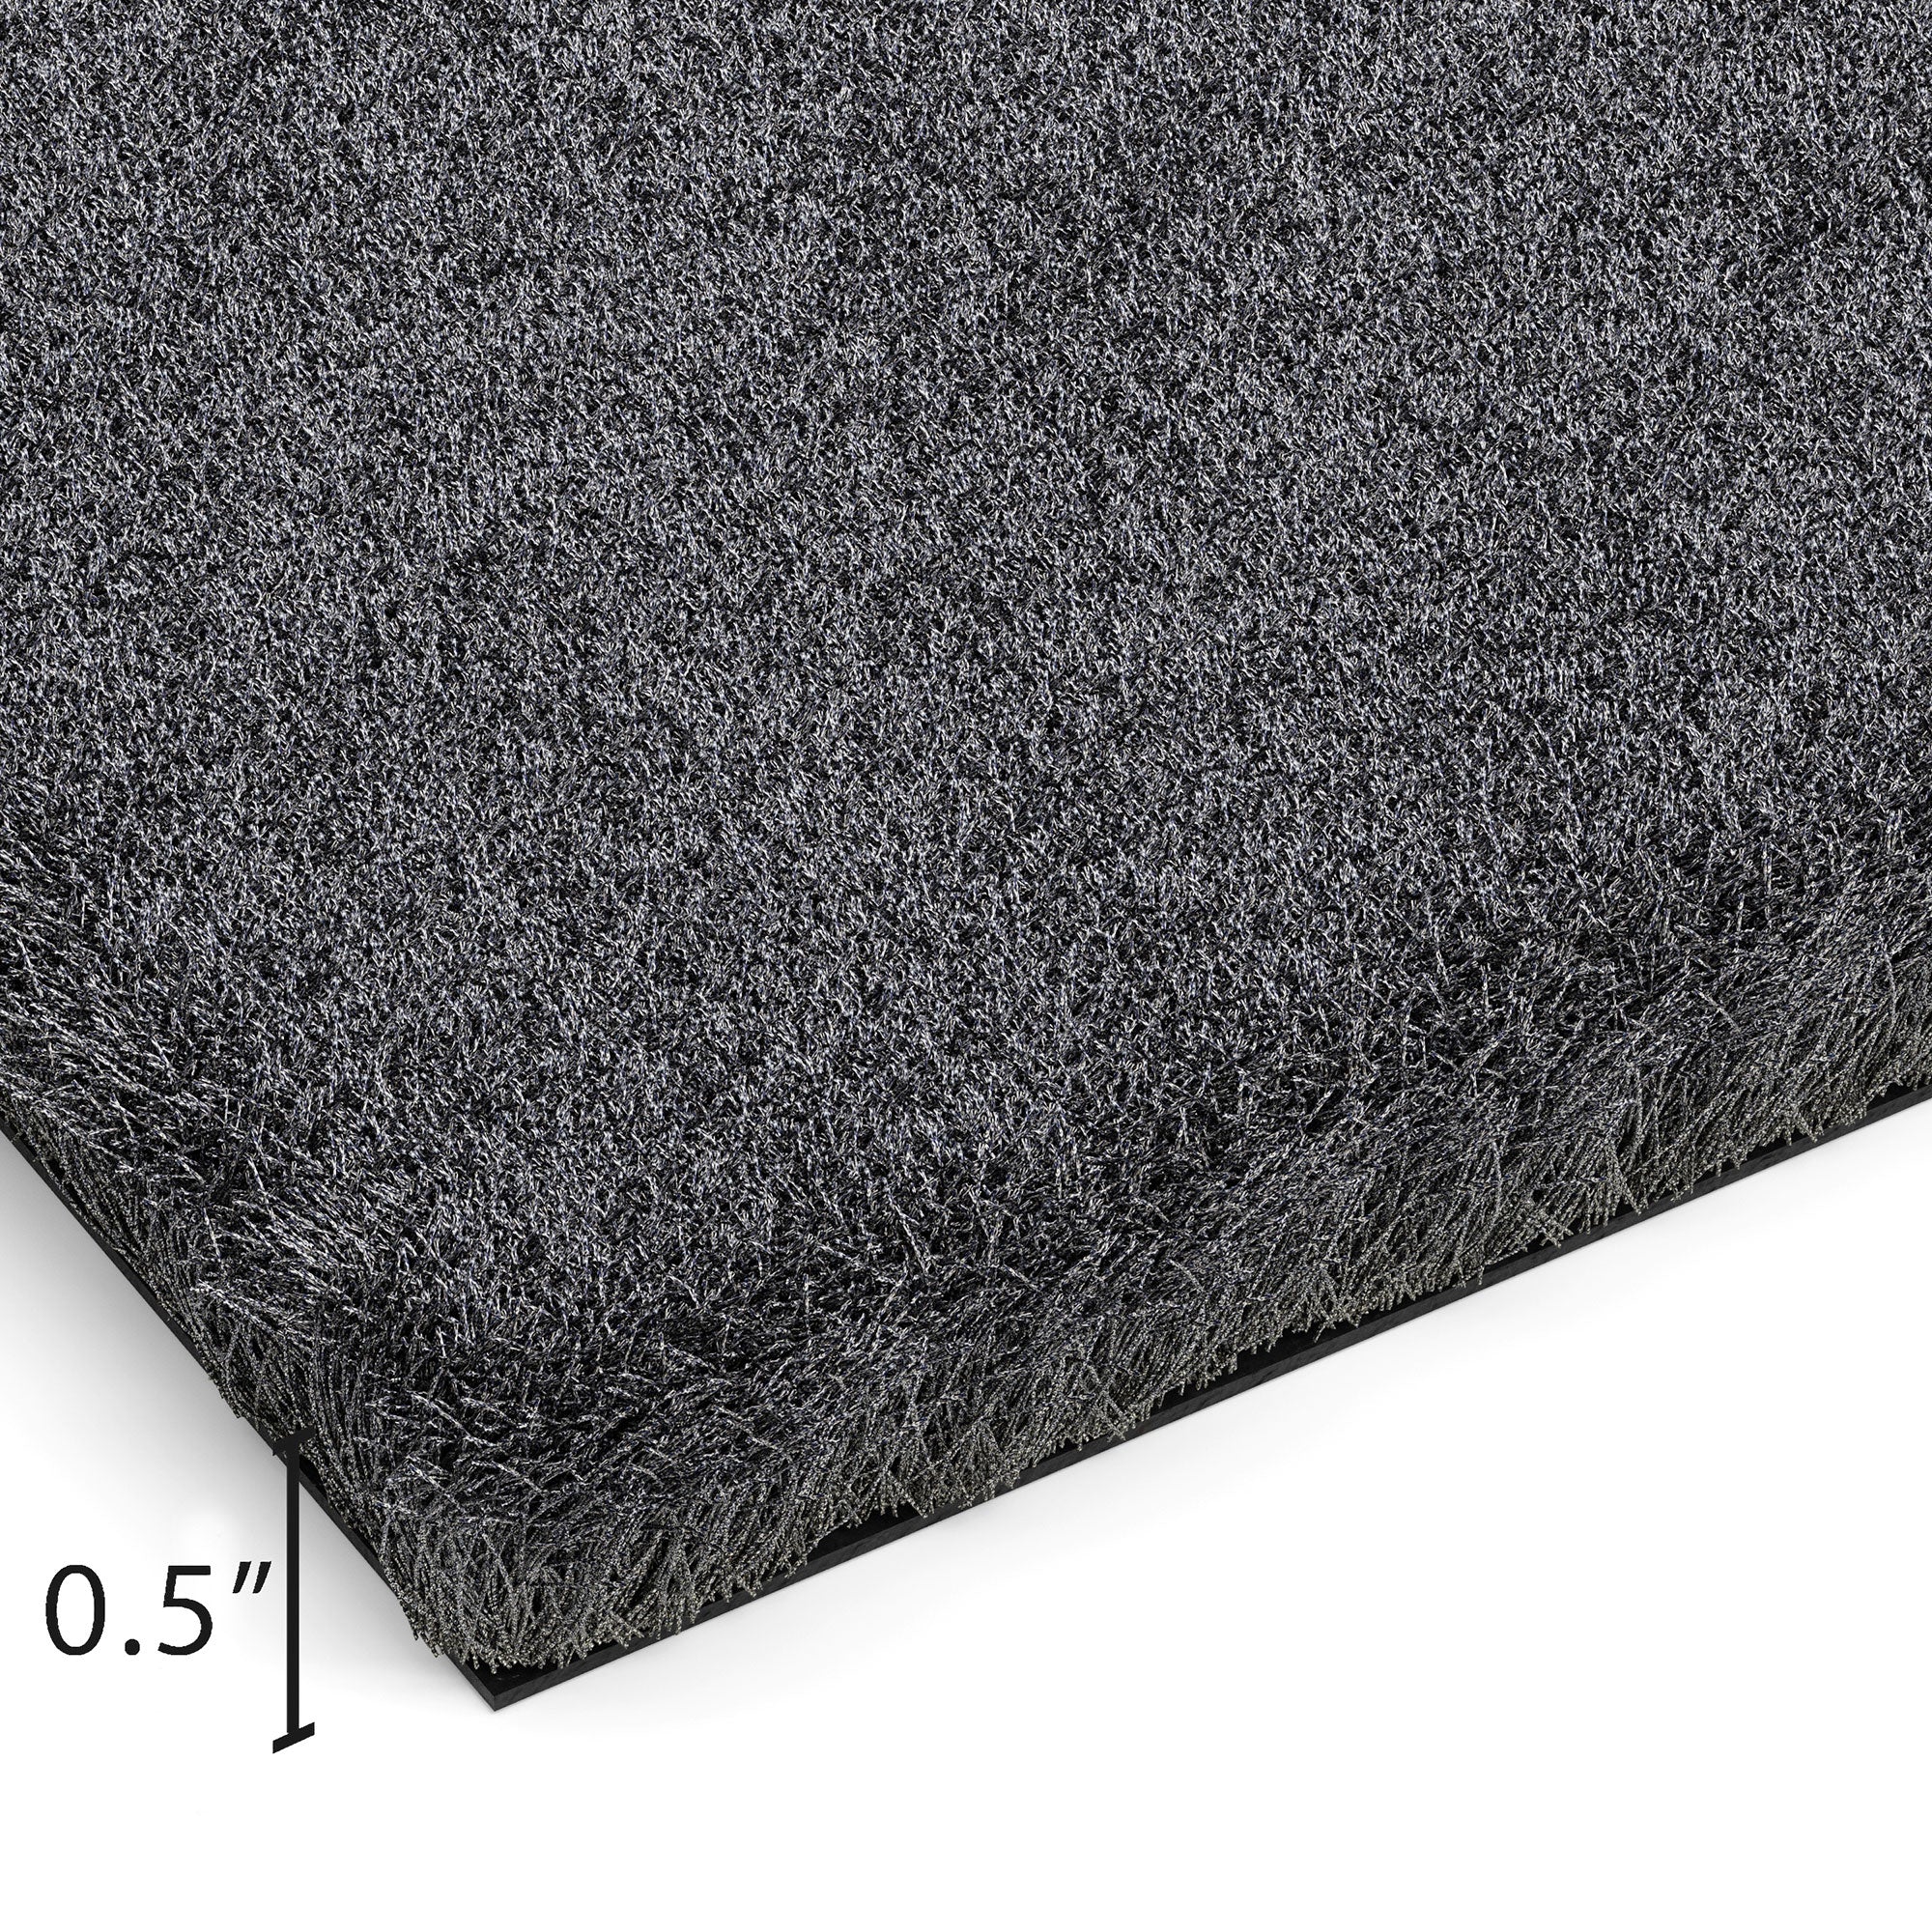 Heavy Duty Slip-Resistant Large Rubber Door Mat Entrance Carpet